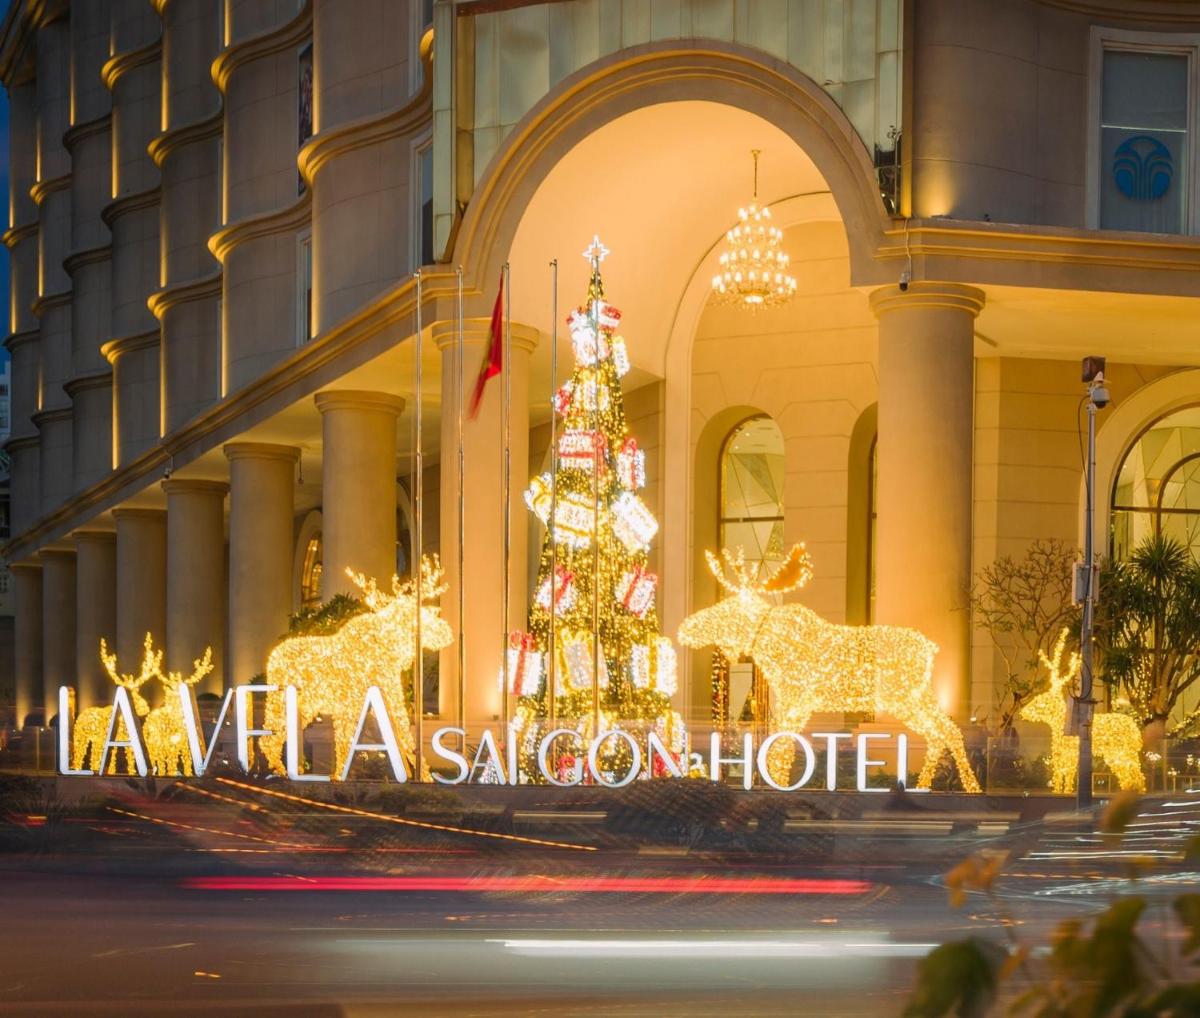 La Vela Saigon Hotel - Housity